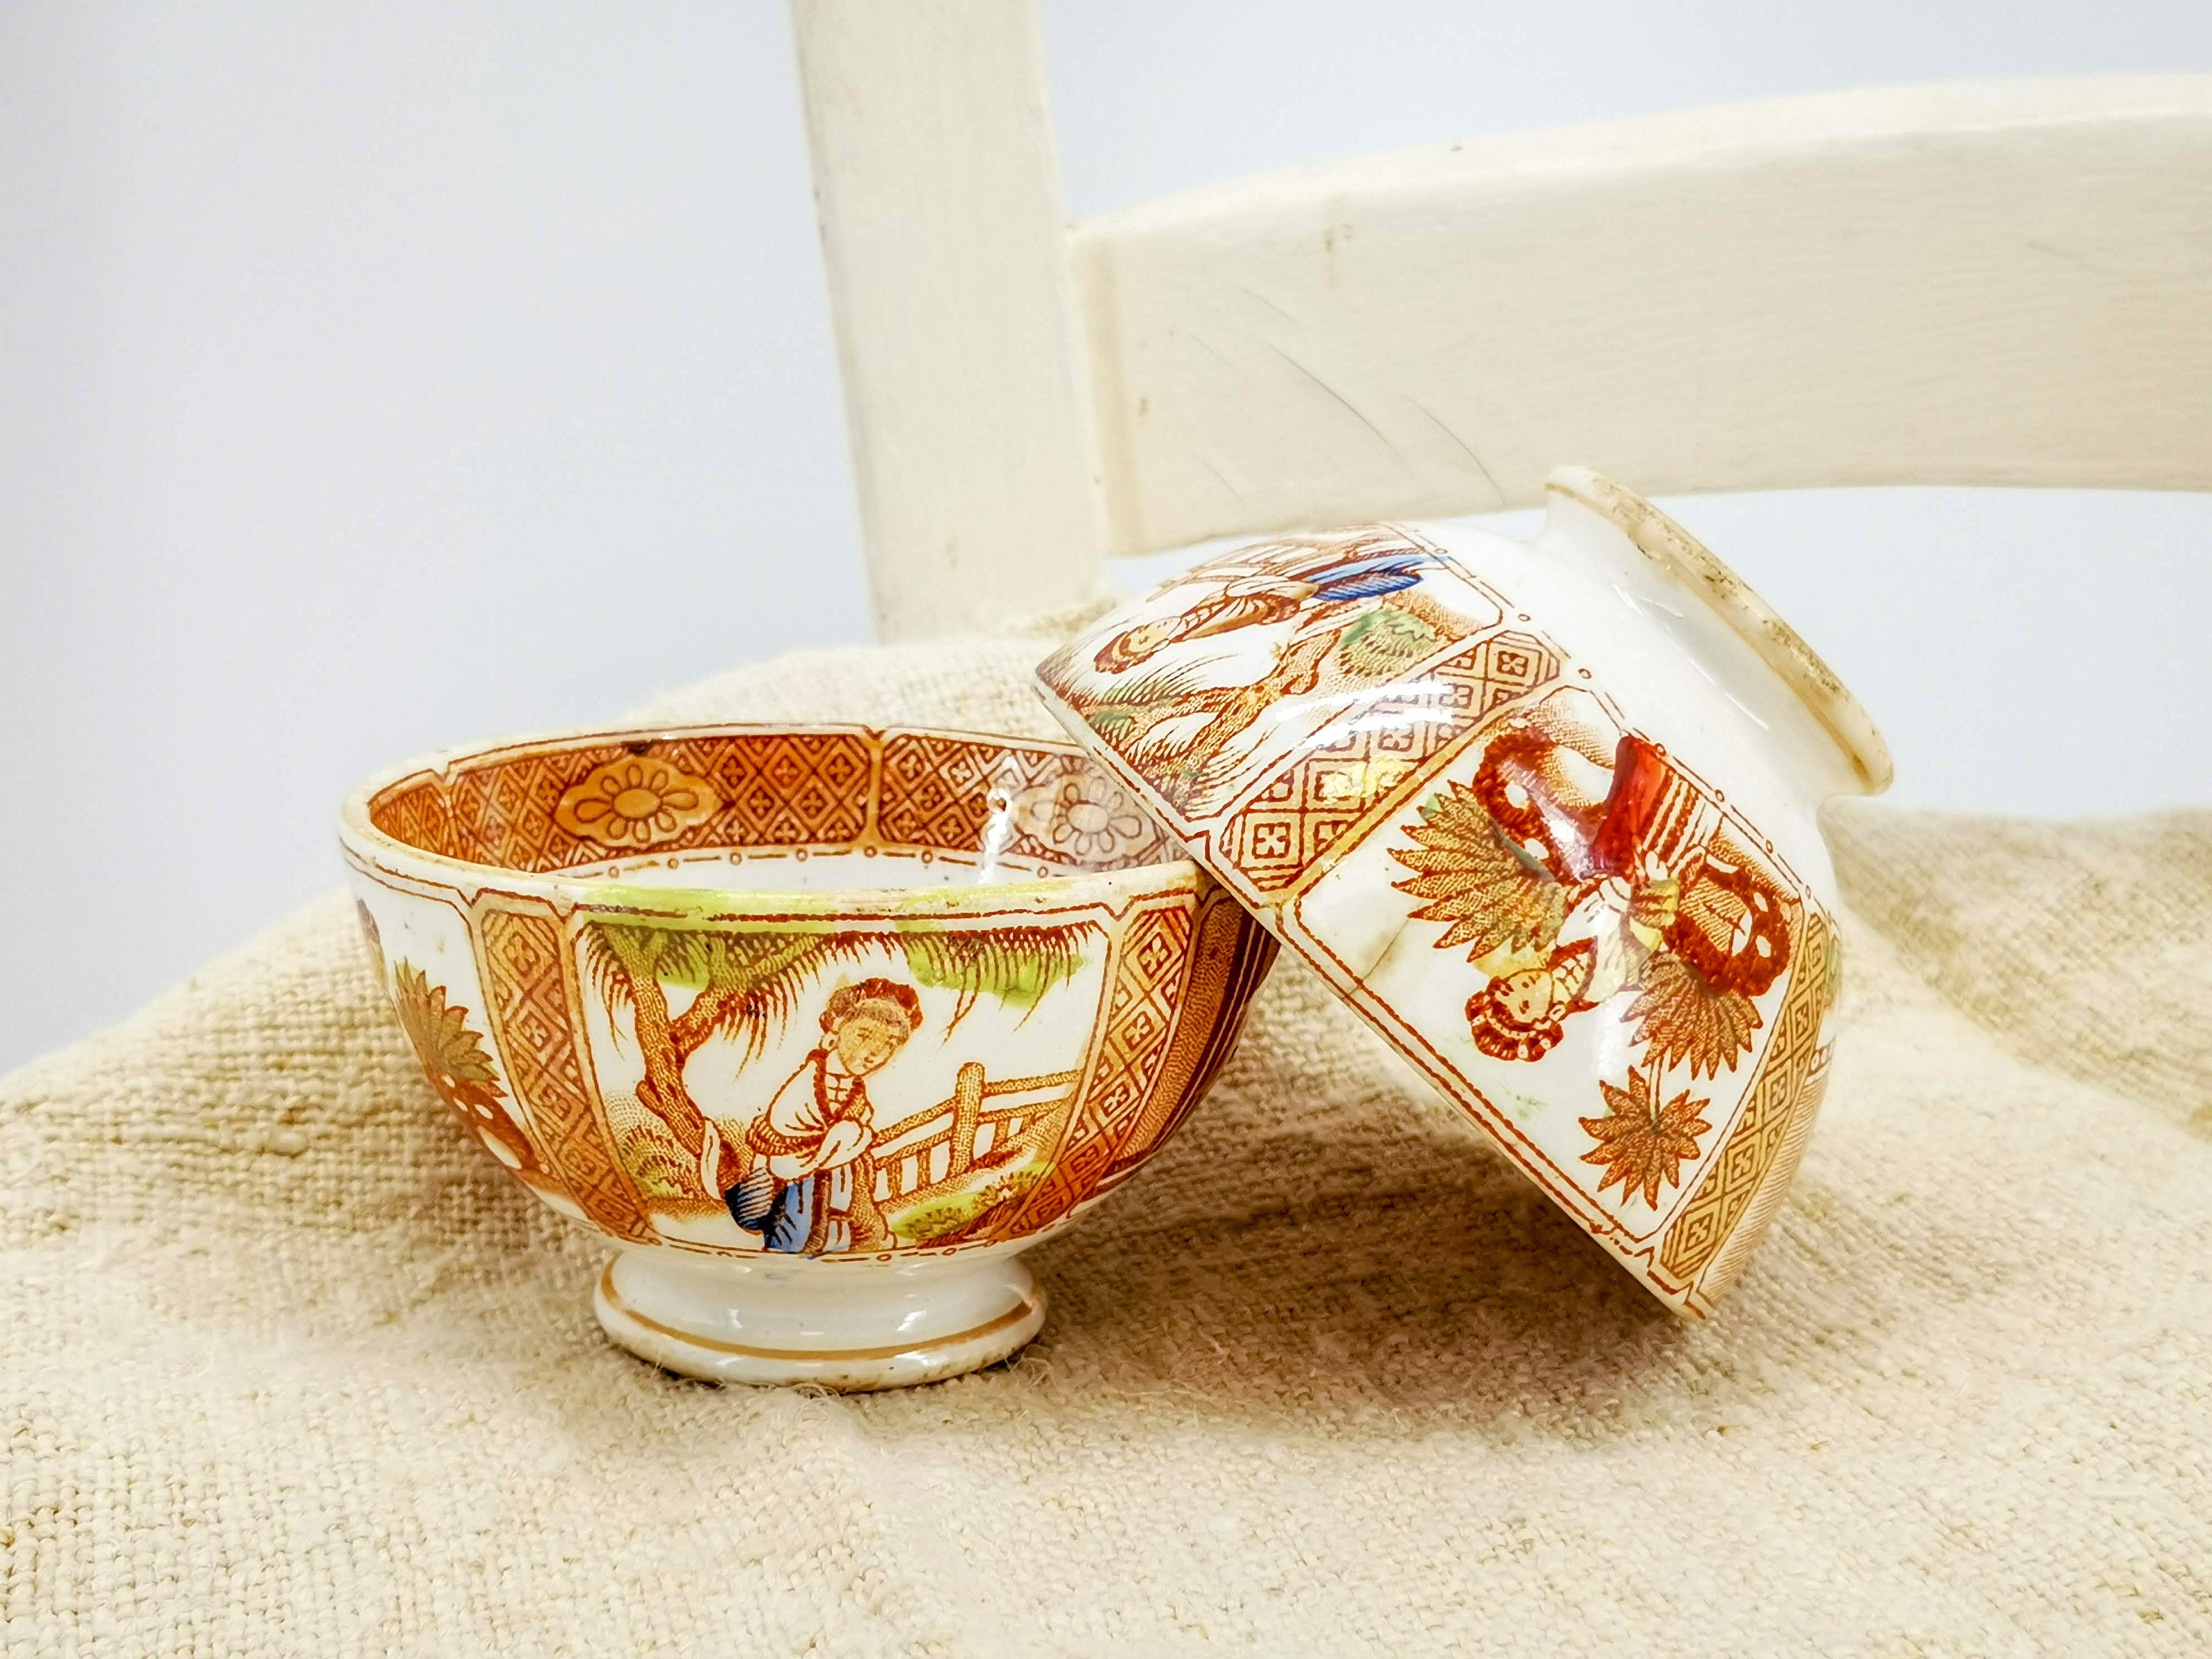 ancien petit bol cafè au lait, décor de transfert polychrome, scènes style chinois avec des femmes, ancien belge en céramique signé boch fréres